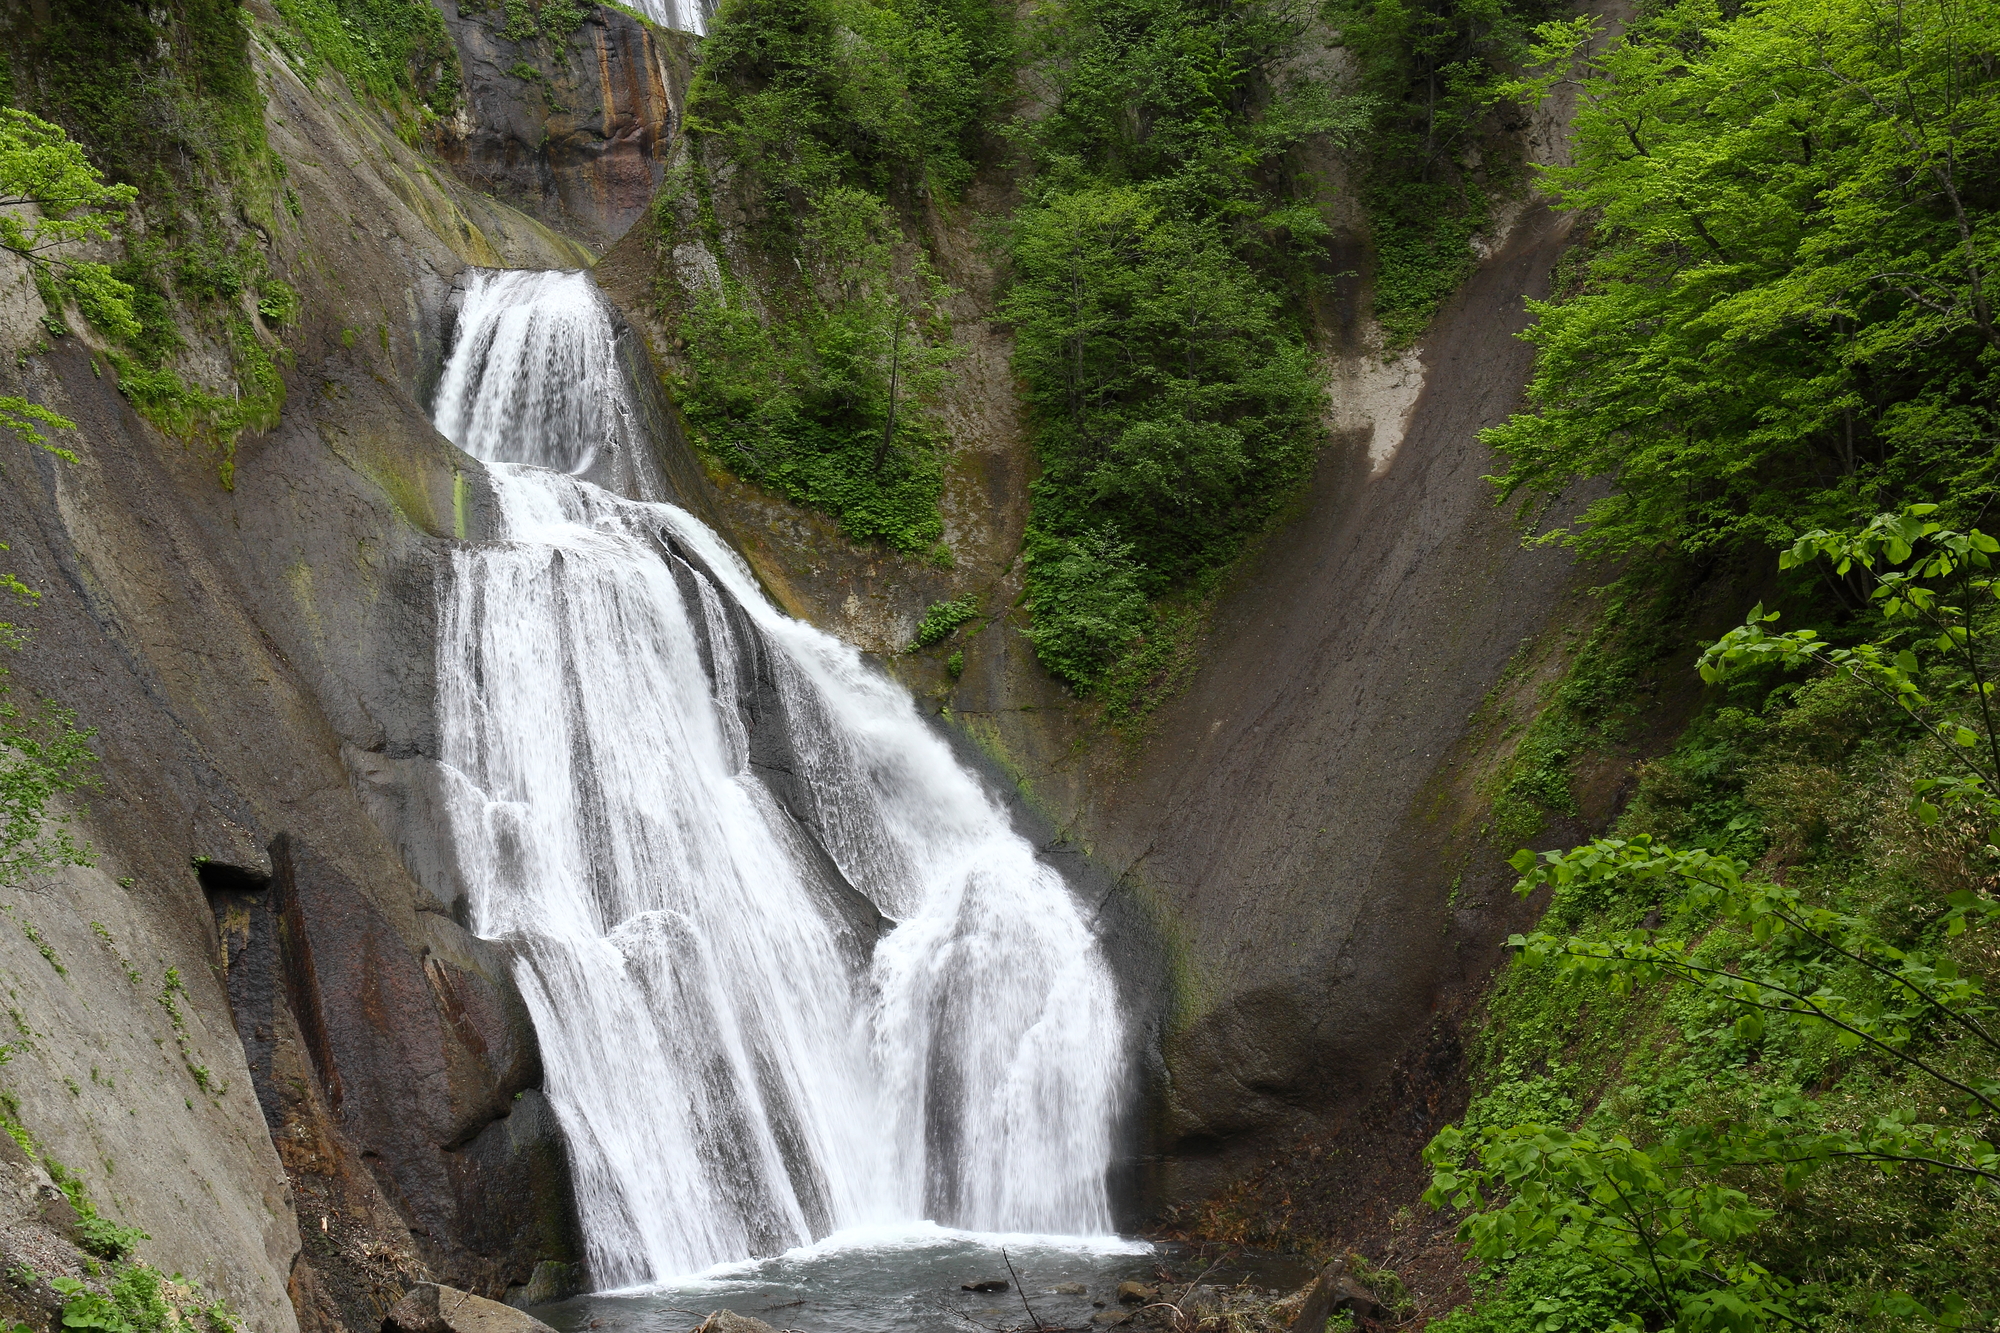 另外还有一处想要推荐给大家的地方就是位于山麓部分的天人峡温泉的“羽衣瀑布”了。曾入选“日本百位瀑布”